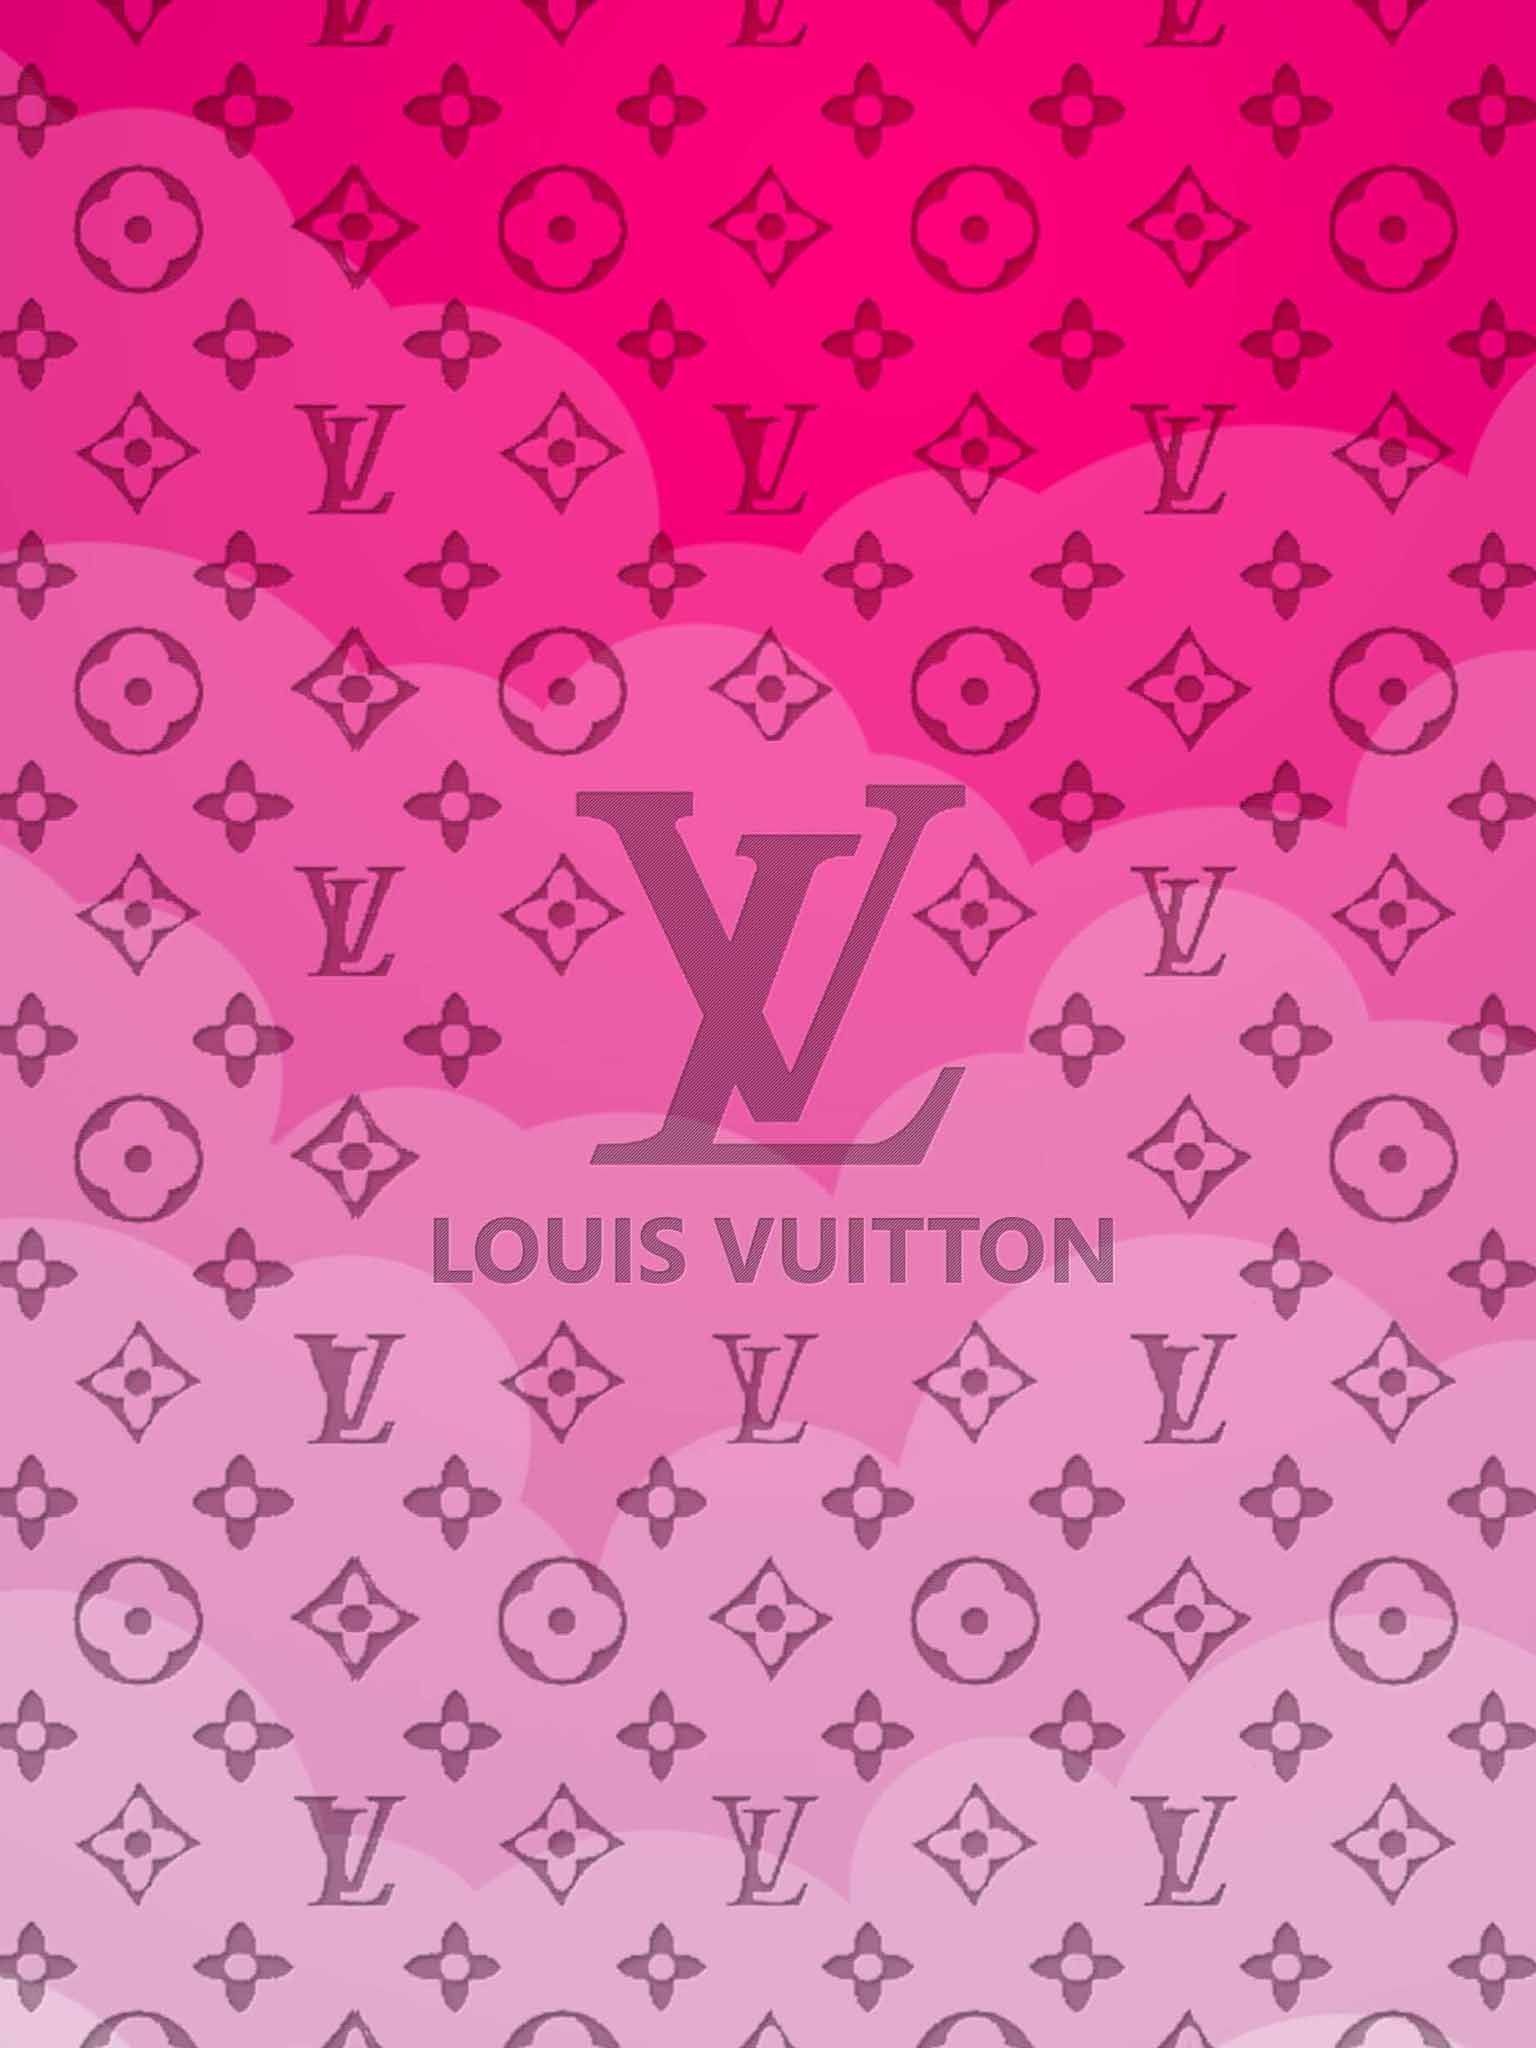 500 Hình Nền Louis Vuitton Đẹp Sang Chảnh Hơn Cá Cảnh